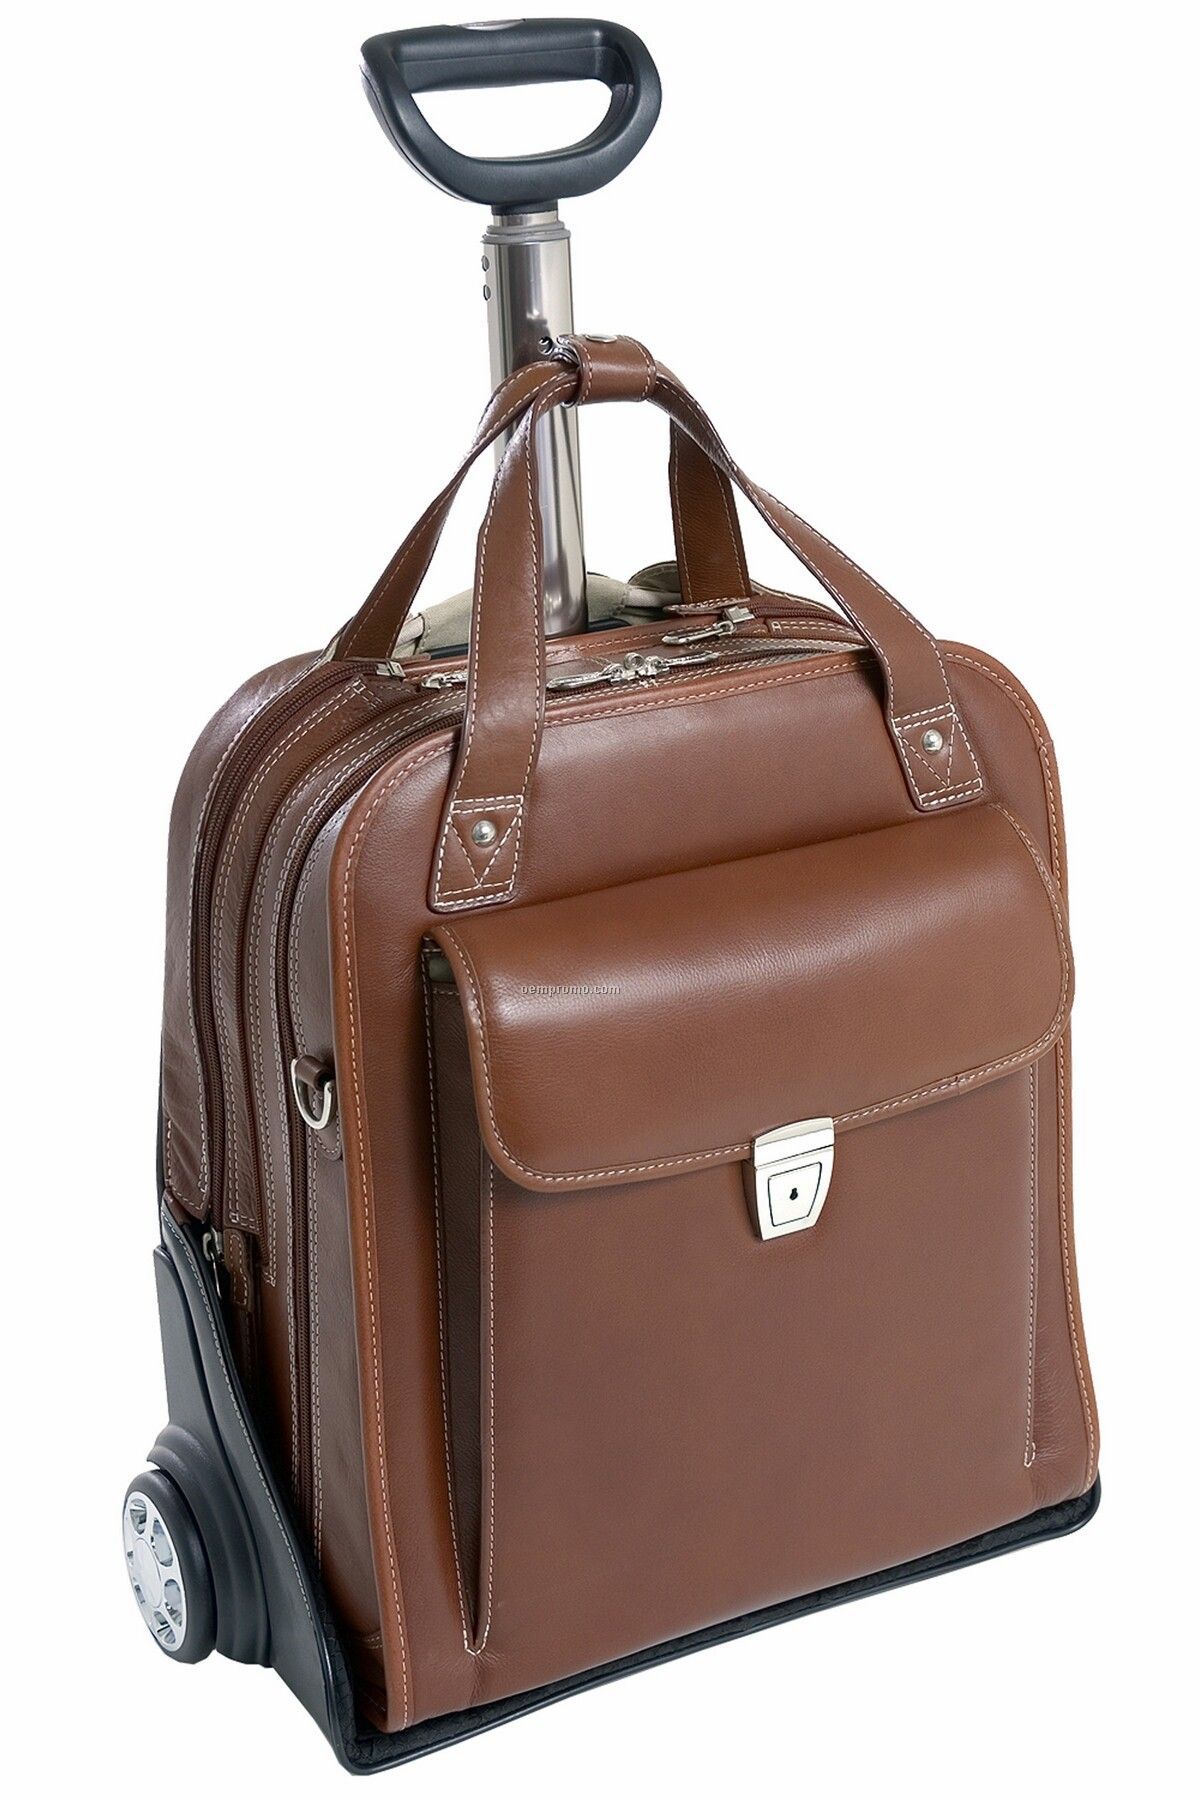 Pastenello Leather Vertical Detachable Wheeled Laptop Case - Cognac Brown